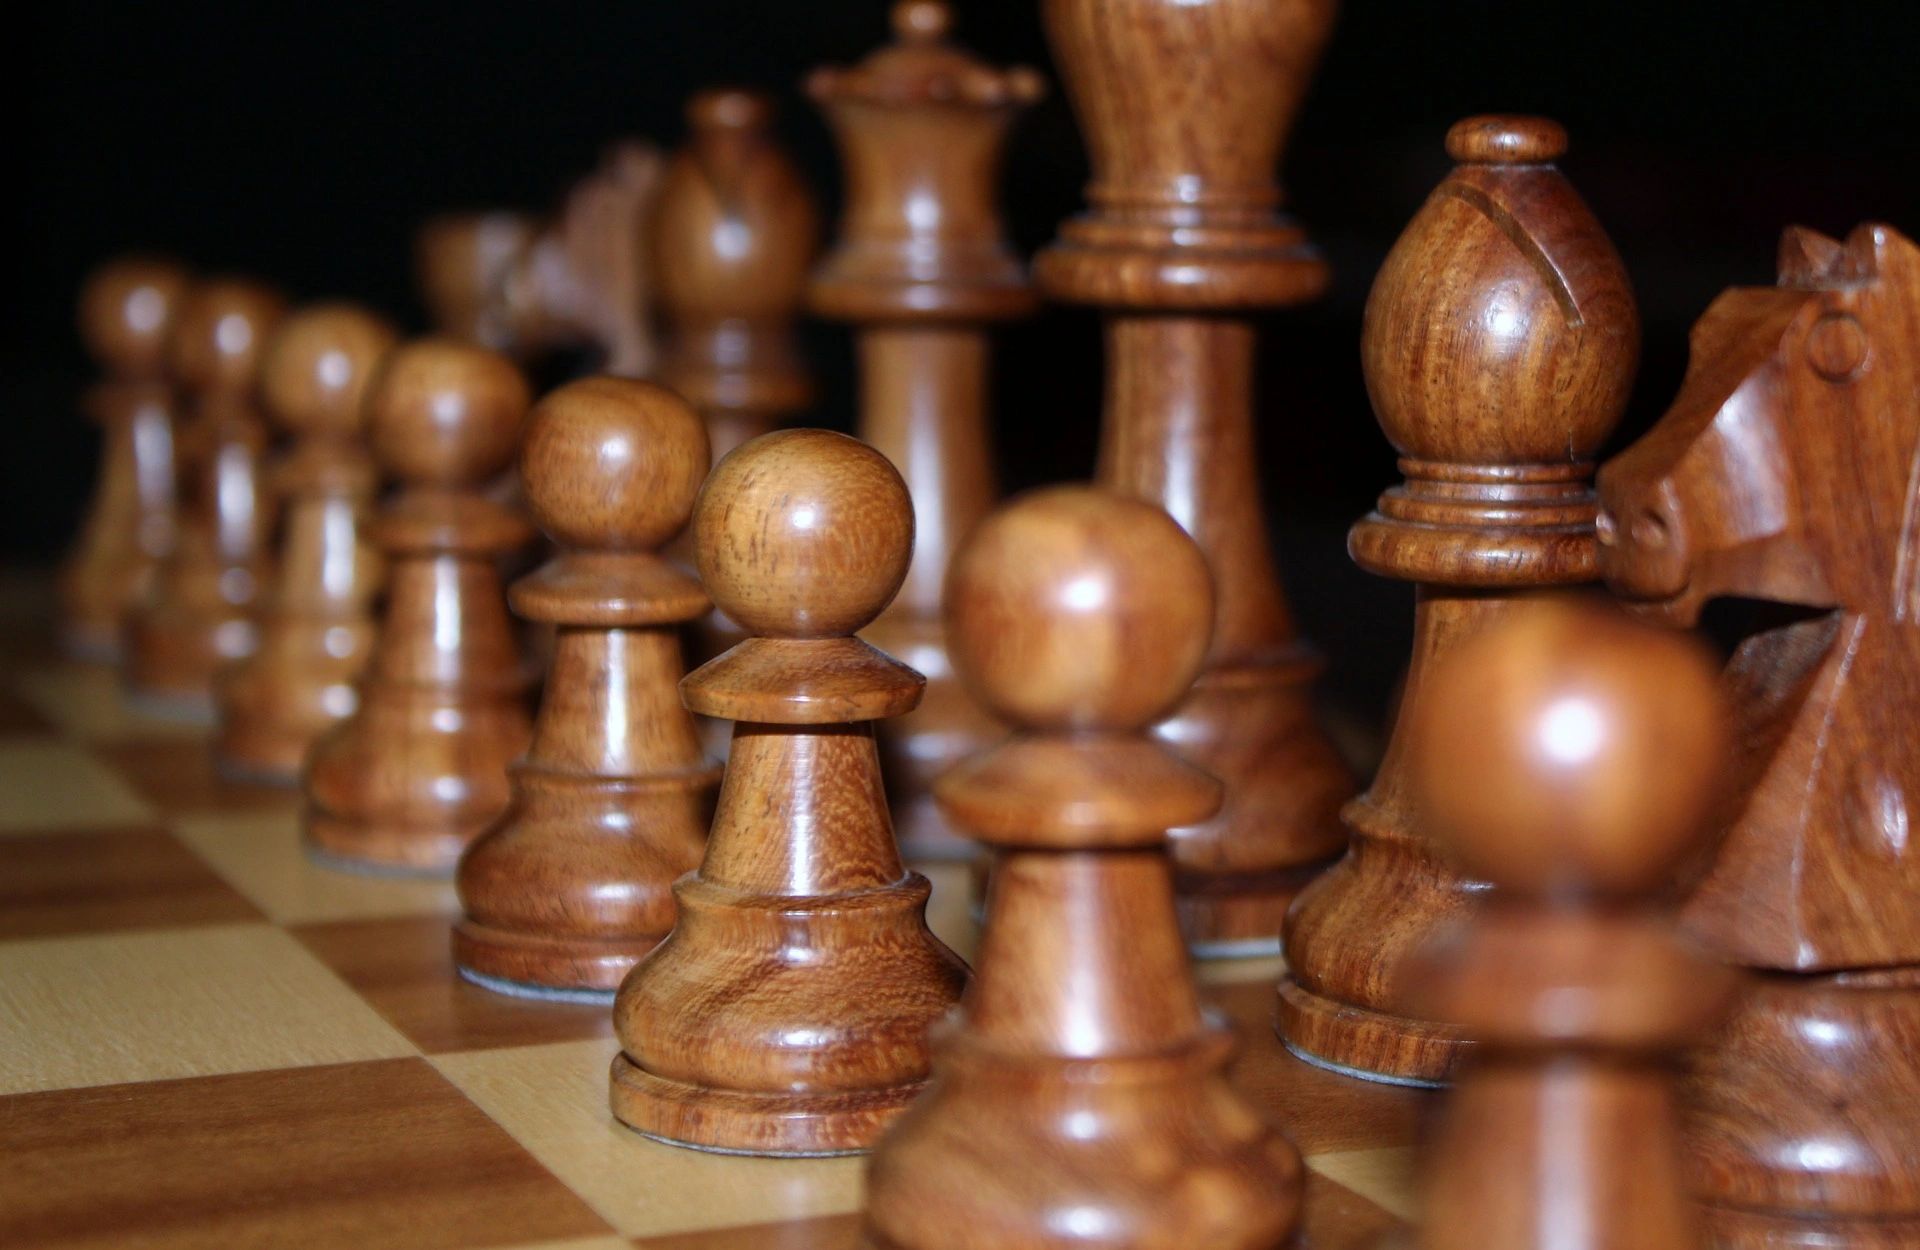 Gemeinsames Schach spielen - Über den Tellerrand